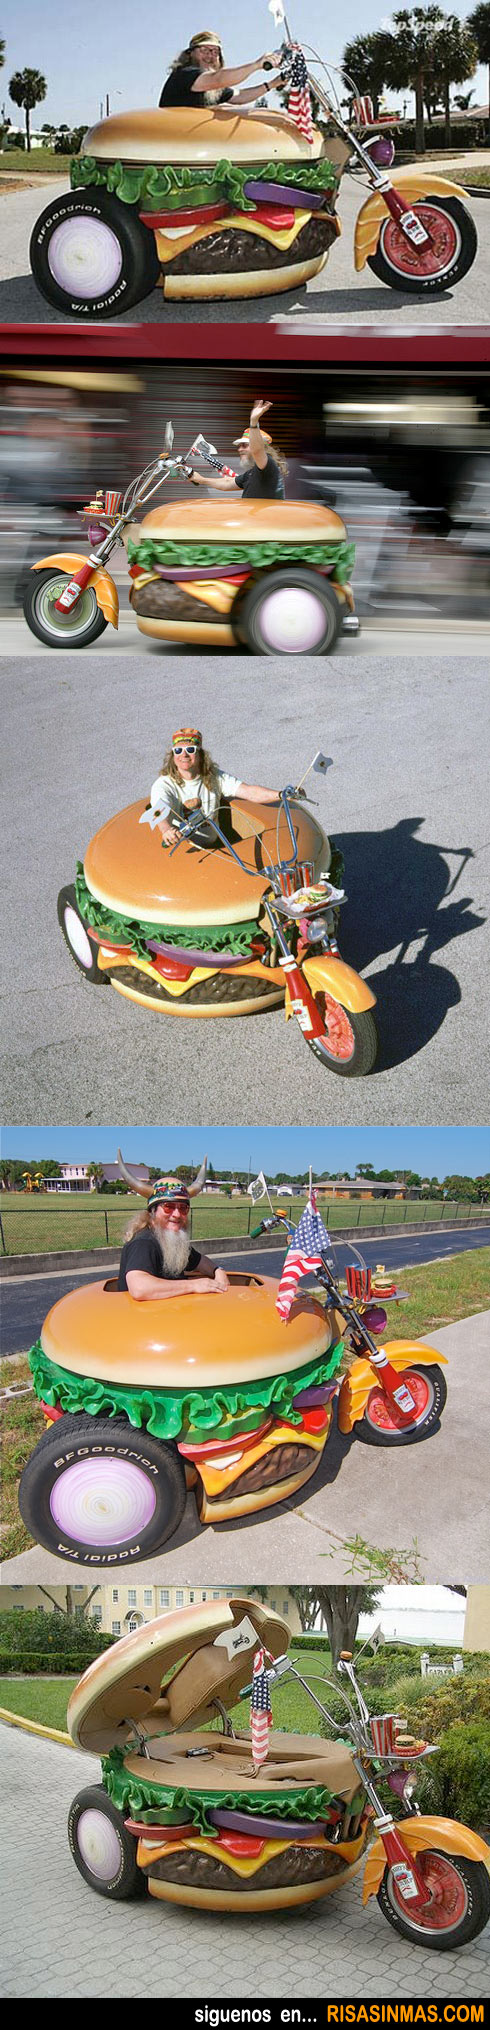 La moto hamburguesa